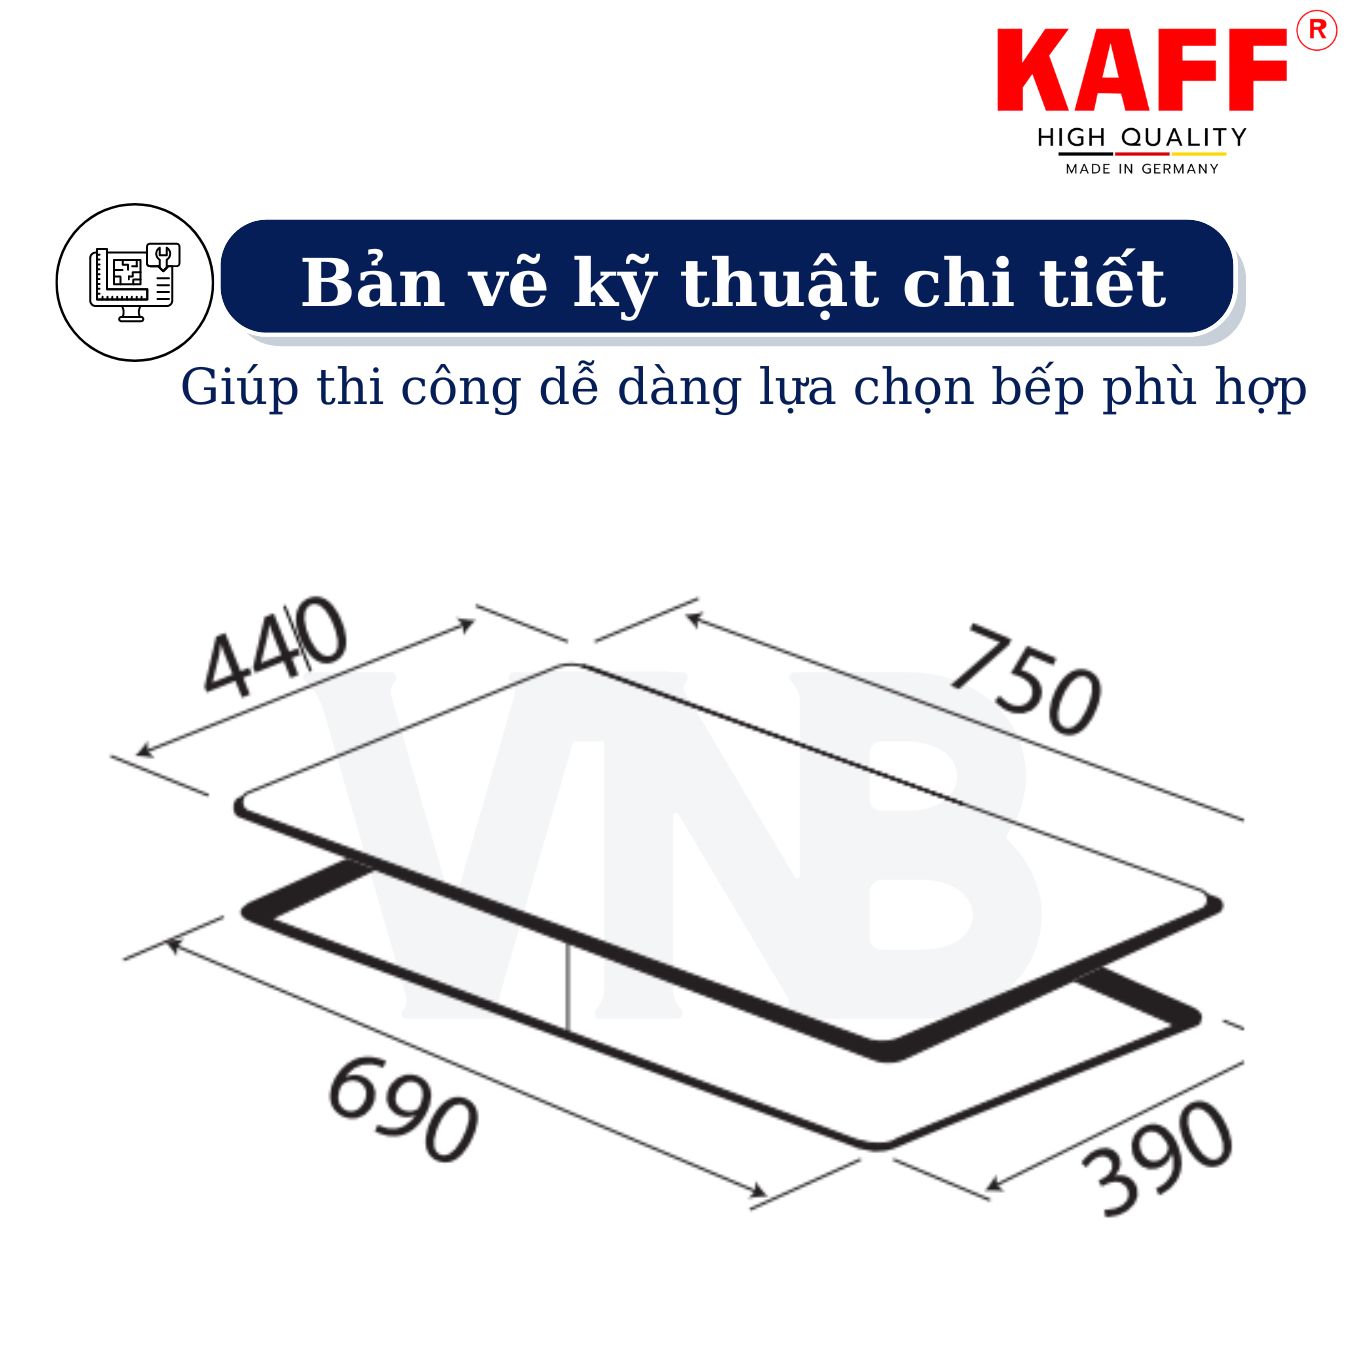 Bộ Bếp ga âm KAFF KF-668 bao gồm: Bếp ga + chảo chống dính cao cấp + bộ van ga - Hàng chính hãng